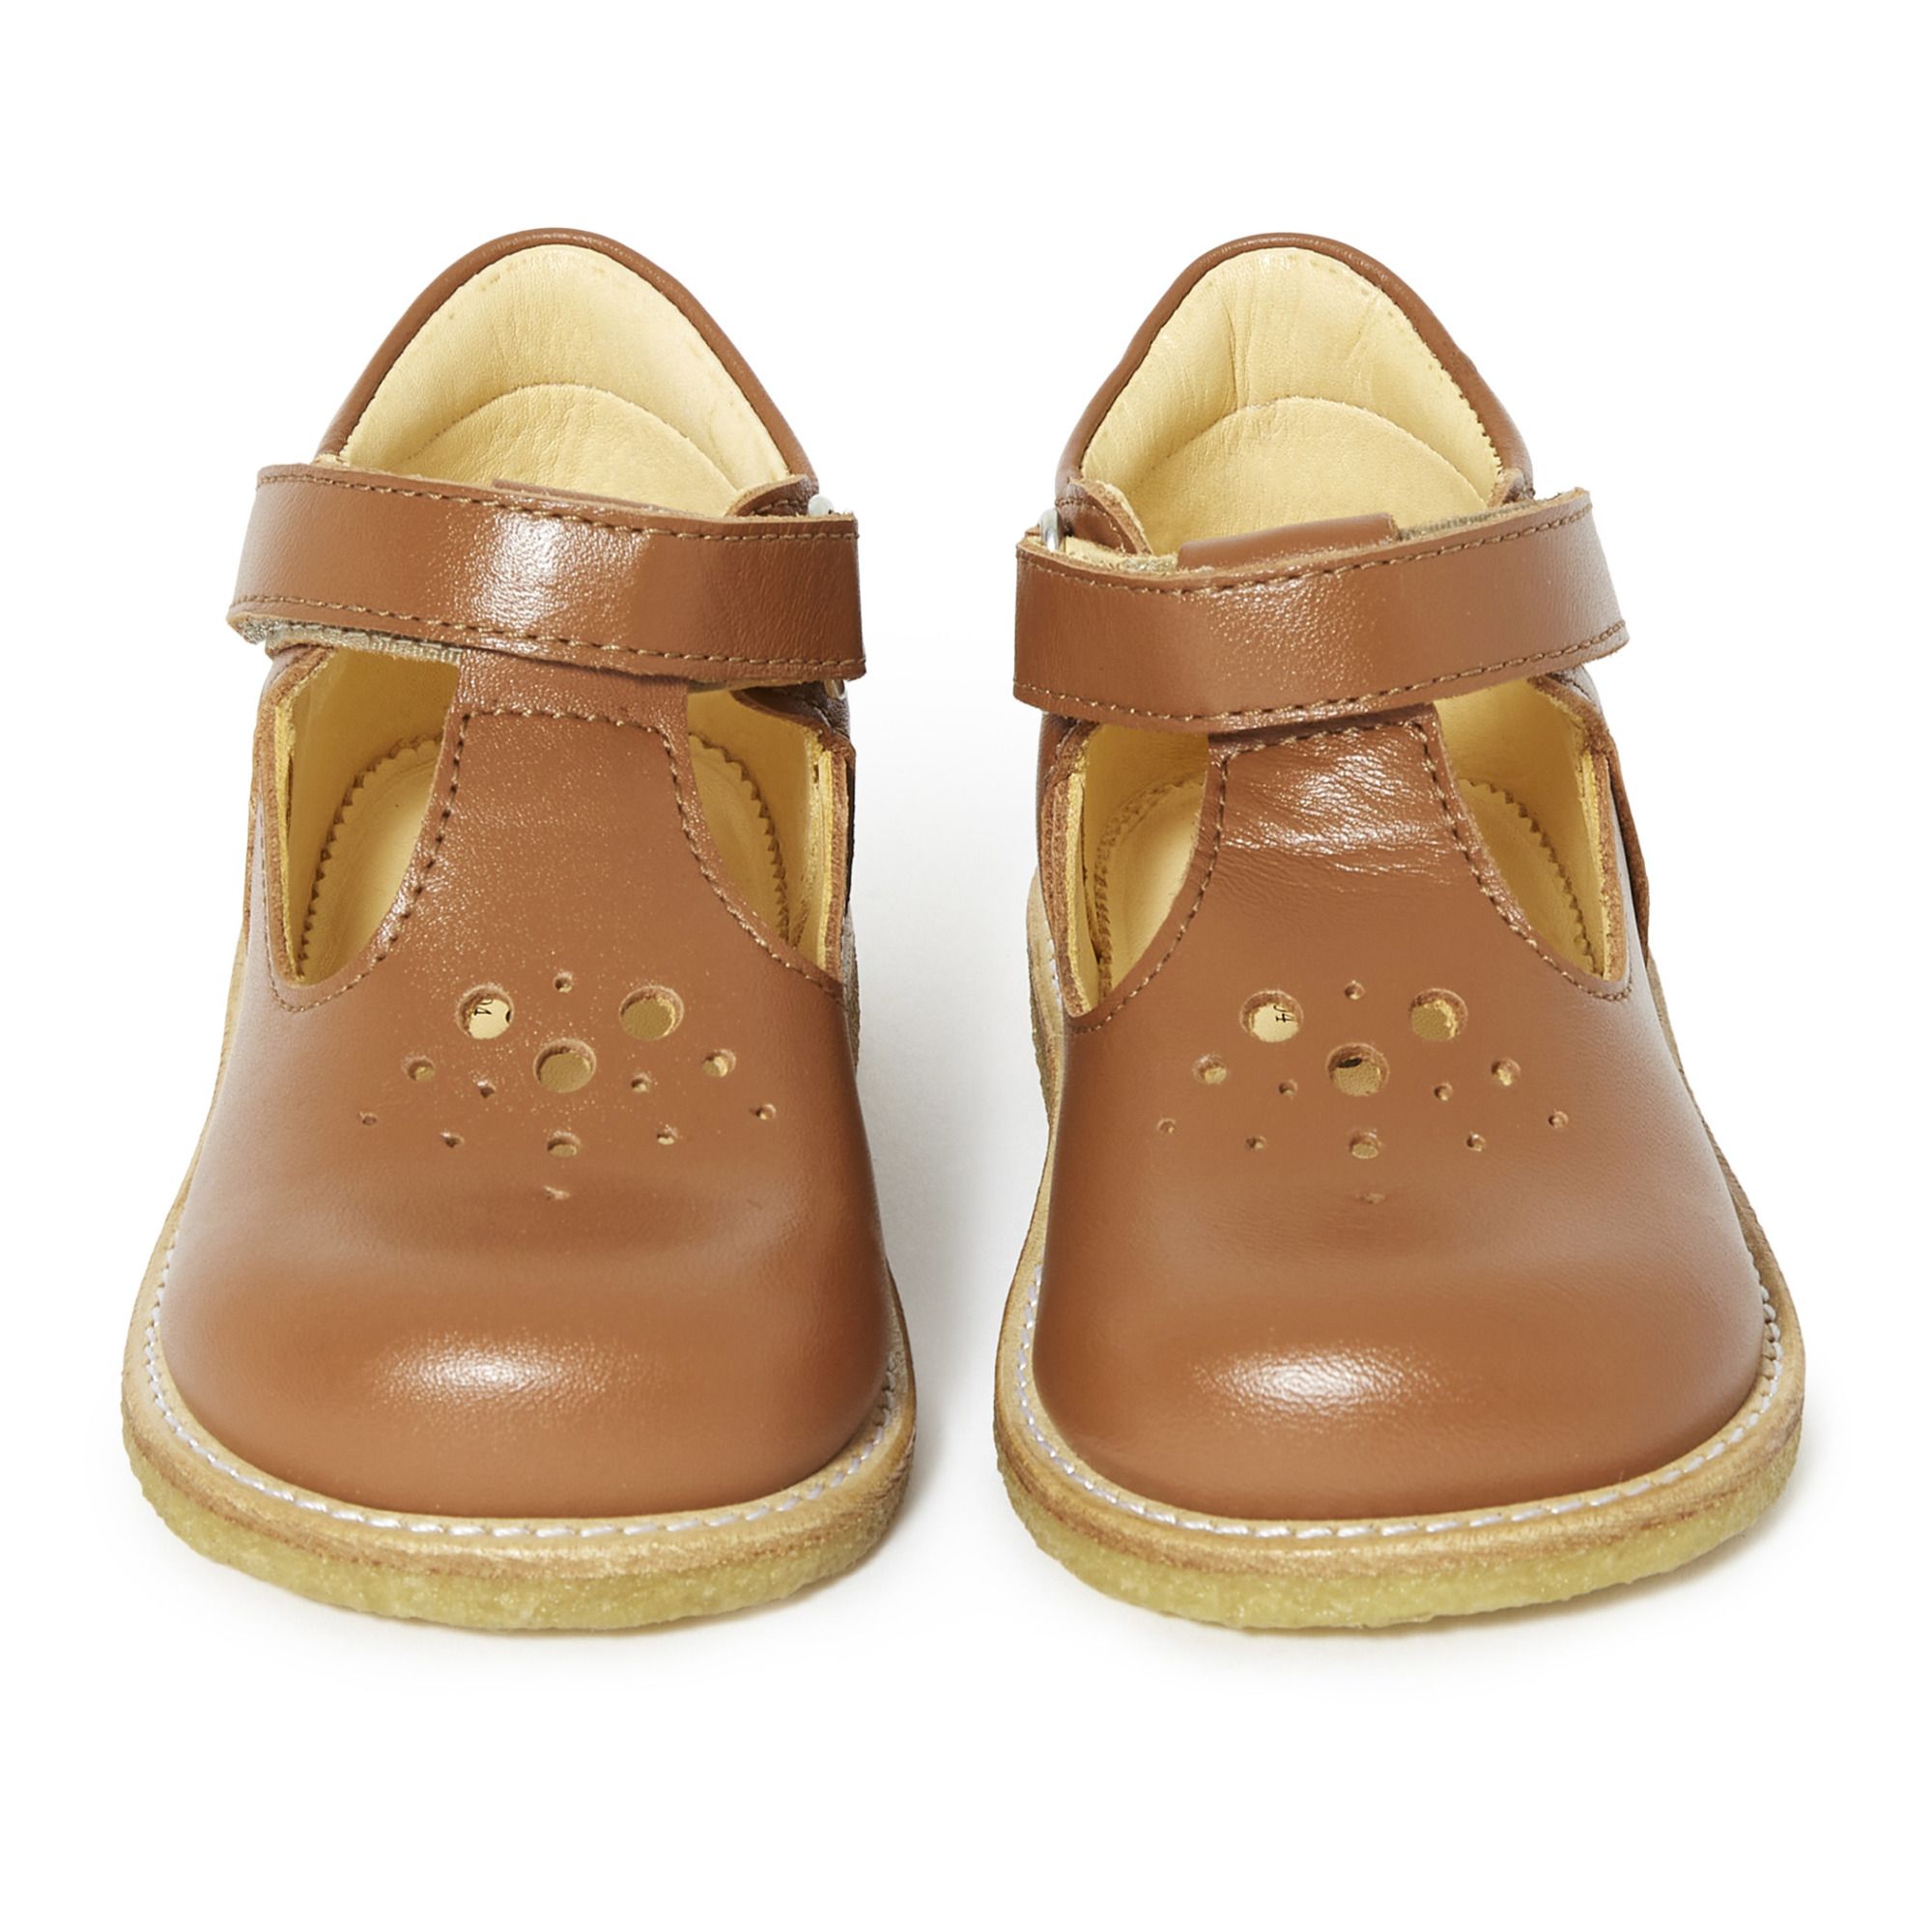 Til sandheden Læge hoste Openwork Mary Janes Caramel Angulus Shoes Baby, Children - Smallable